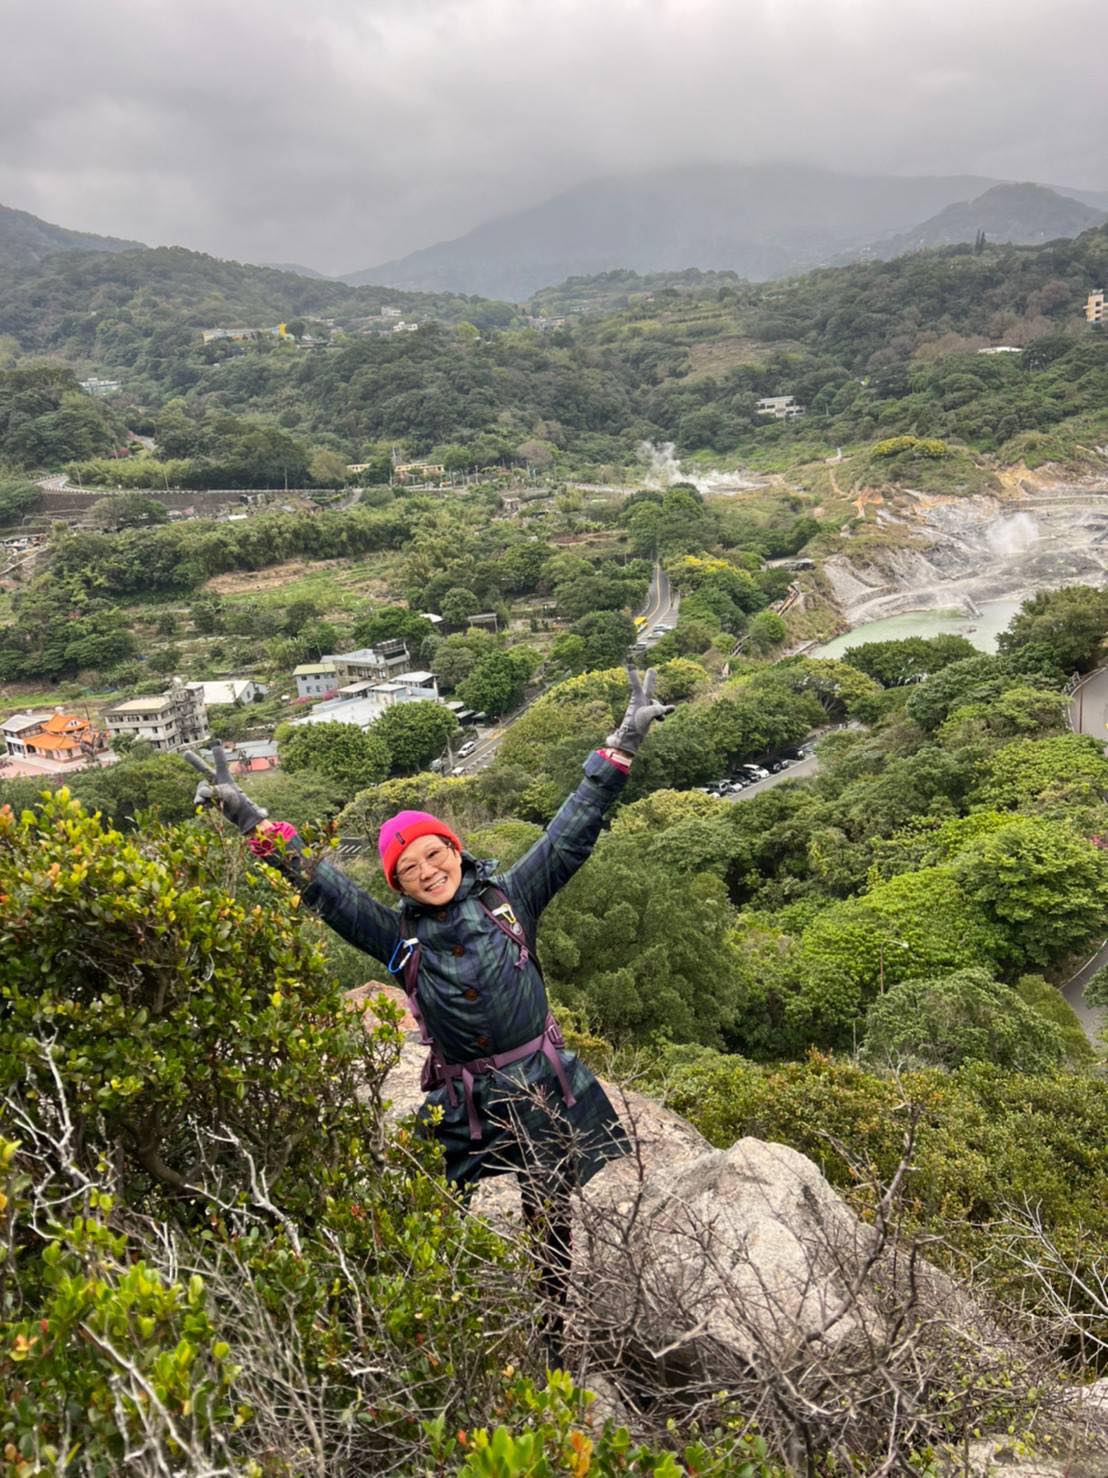 Mei-Ju looking joyful up a mountain